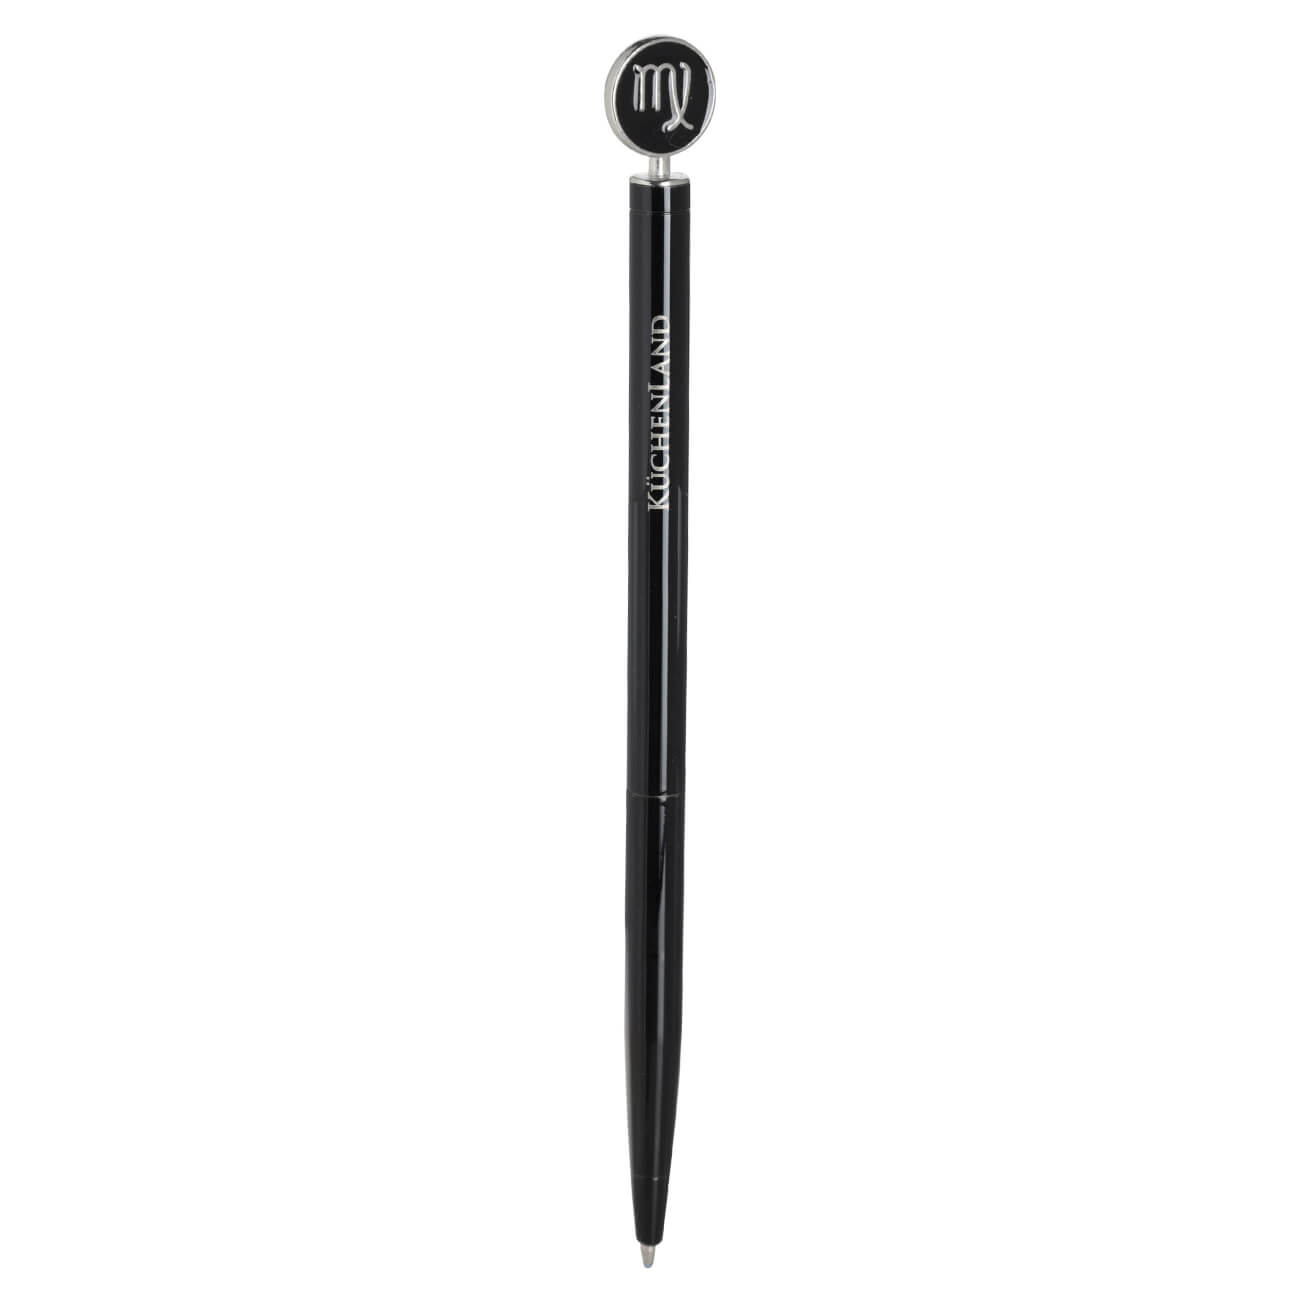 Ручка шариковая, 15 см, с фигуркой, сталь, черно-серебристая, Дева, Zodiac